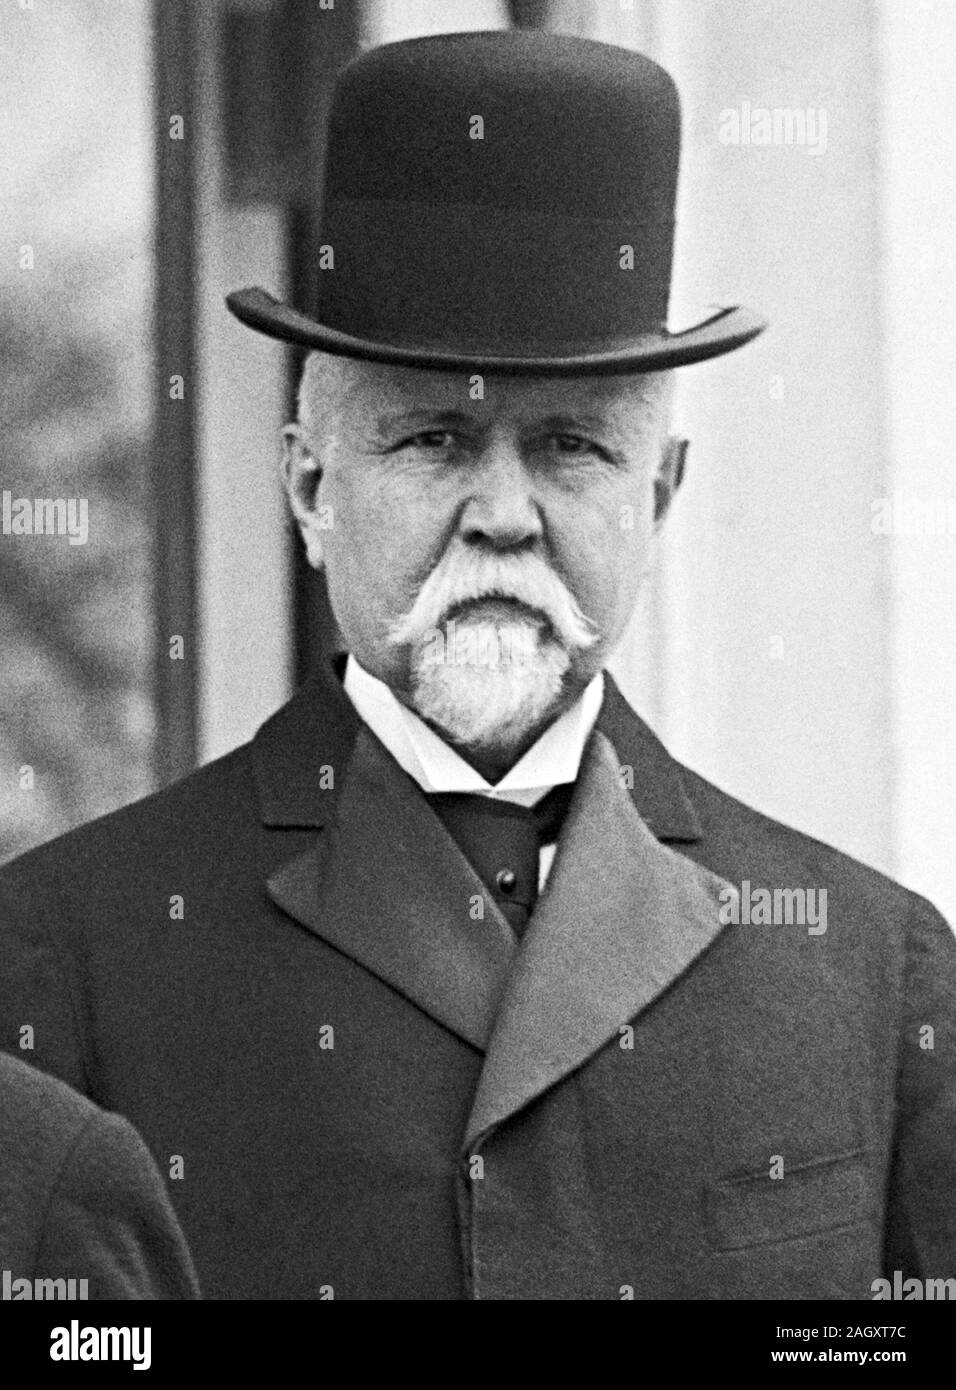 Vintage Foto von amerikanischen Banker und Politiker Theodore P Gilman (1841 - 1930). Foto um 1914 von Harris & Ewing. Stockfoto